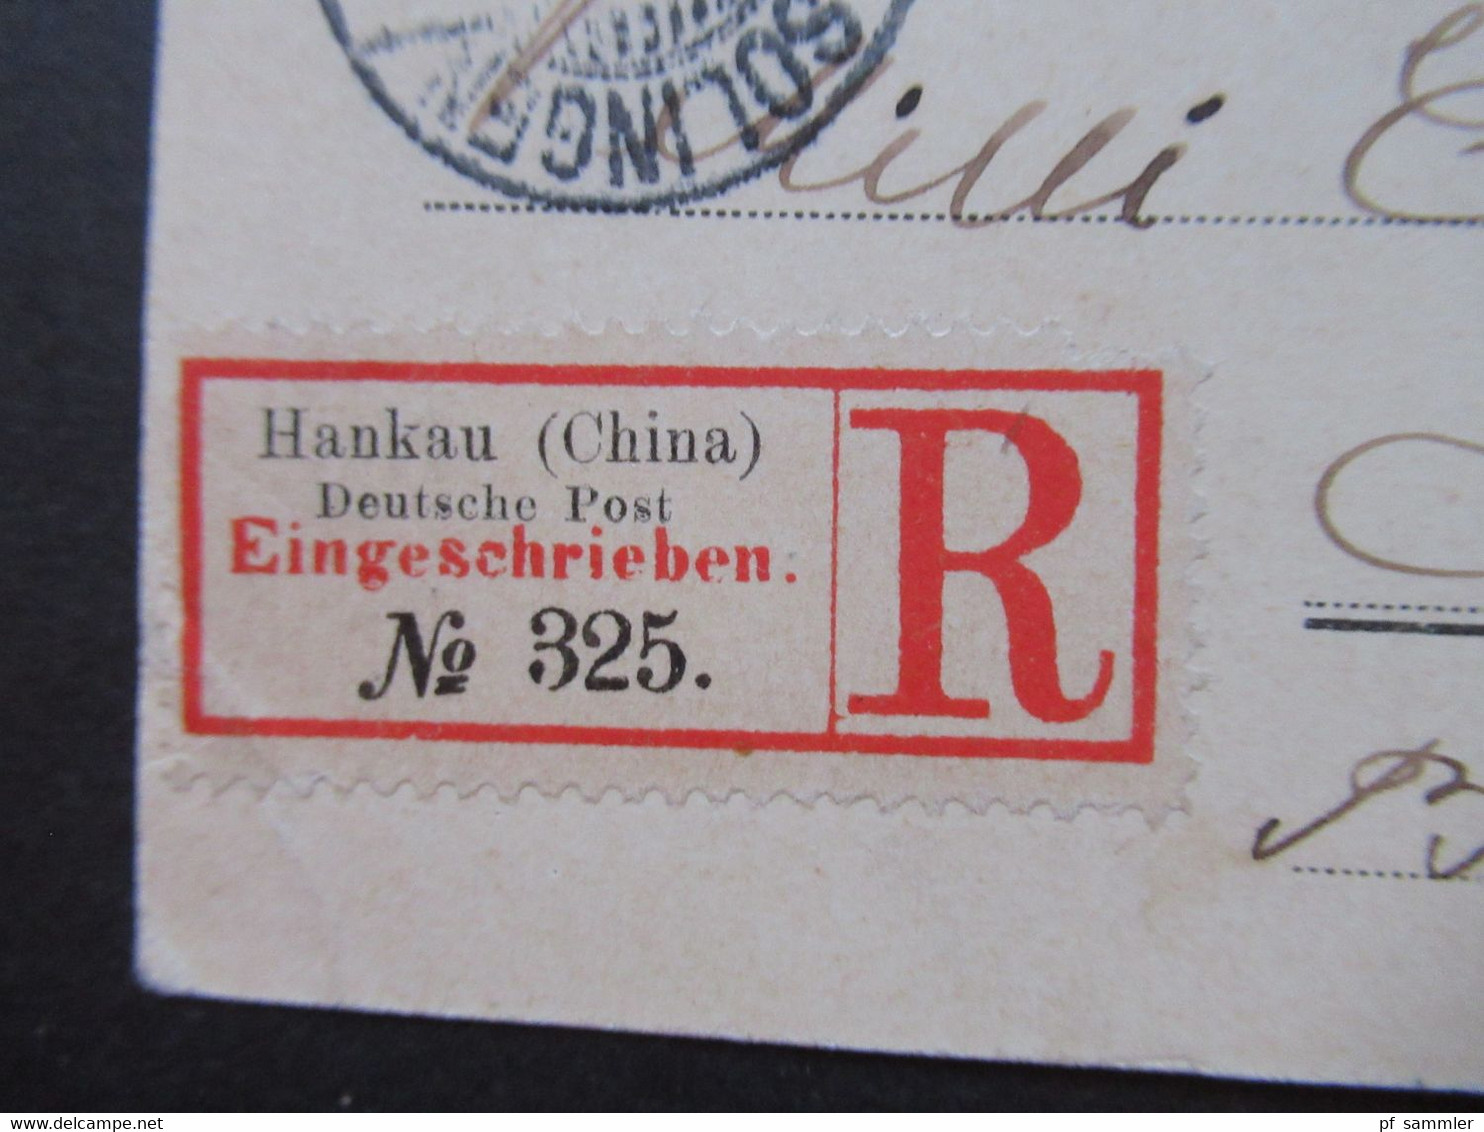 1904 Kolonie Deutsche Post in China AK Iltis Denkmal Shanghai Einschreiben Hankau (China) deutsche Post eingeschrieben